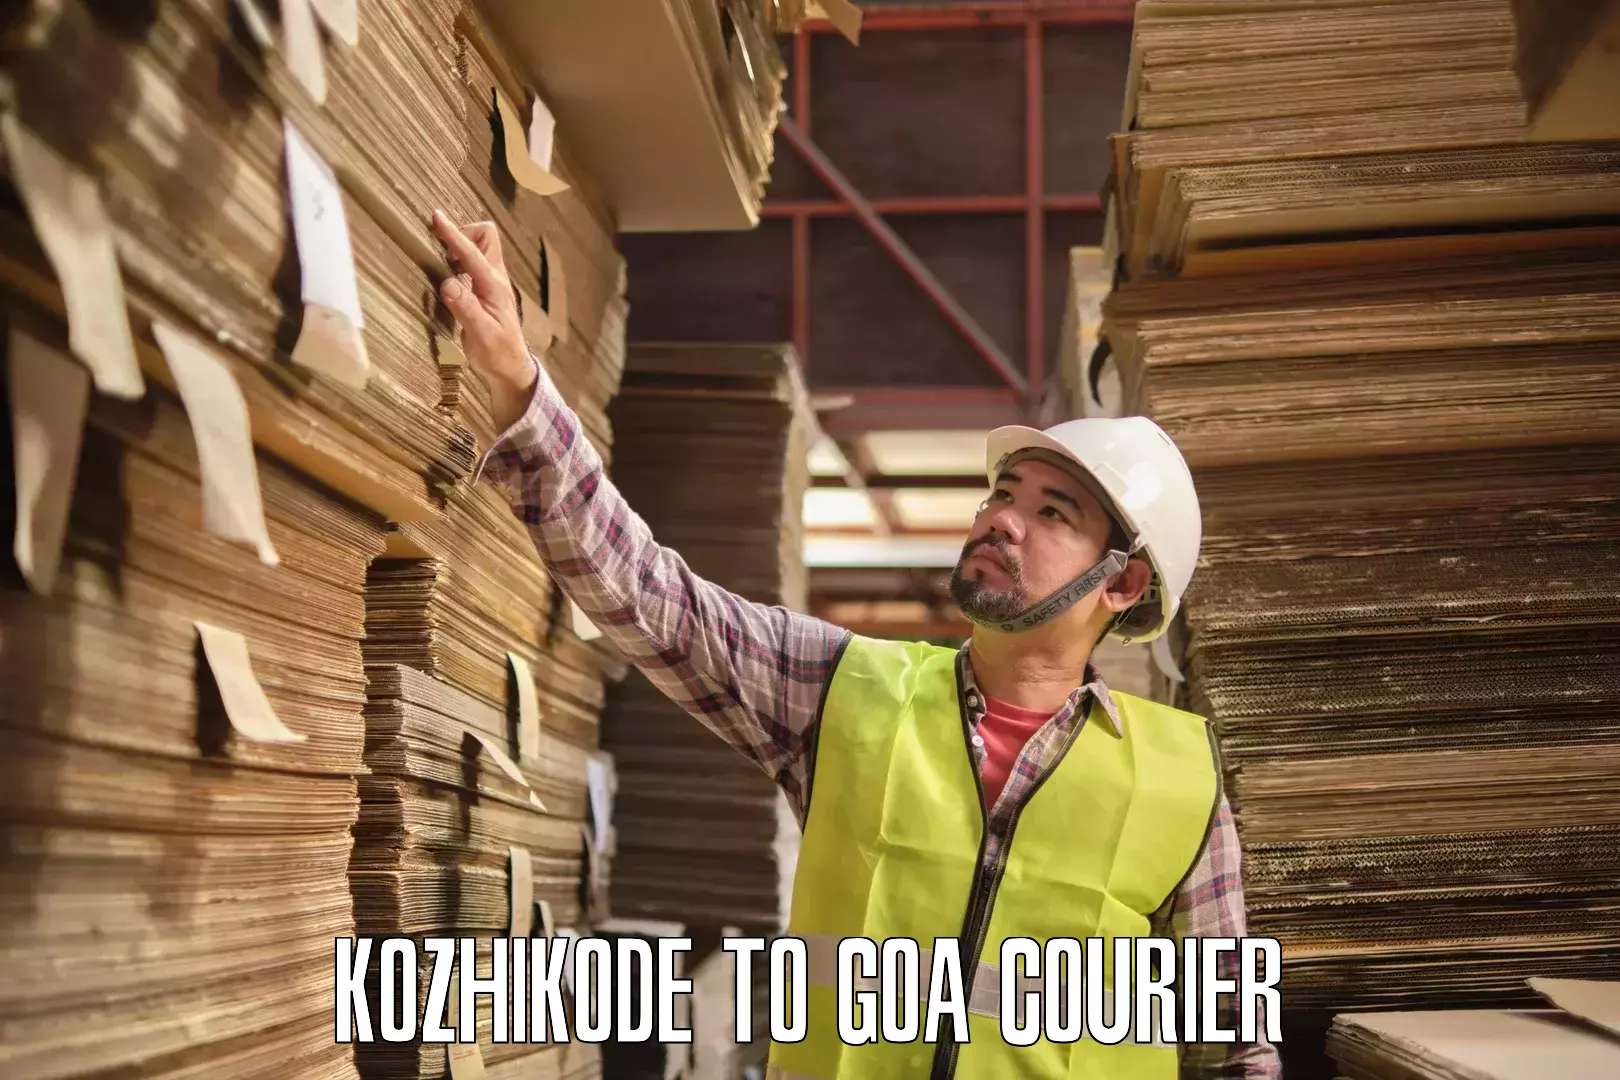 Multi-city courier Kozhikode to Vasco da Gama